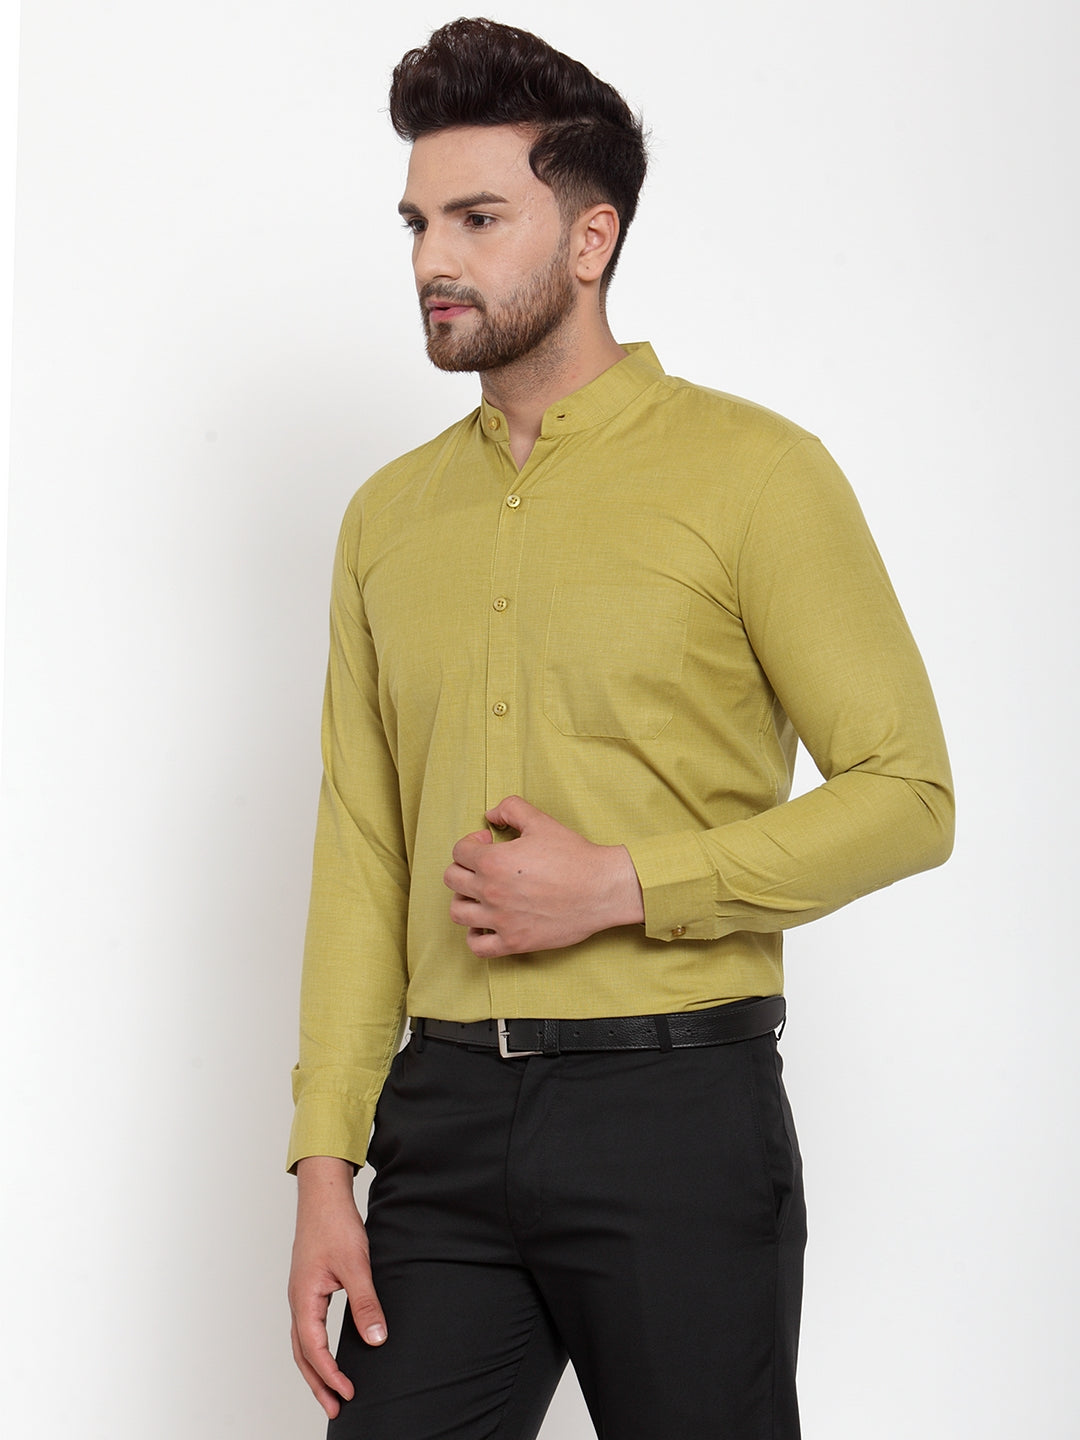 Men's Green Cotton Solid Mandarin Collar Formal Shirts ( SF 757Mehndi ) - Jainish